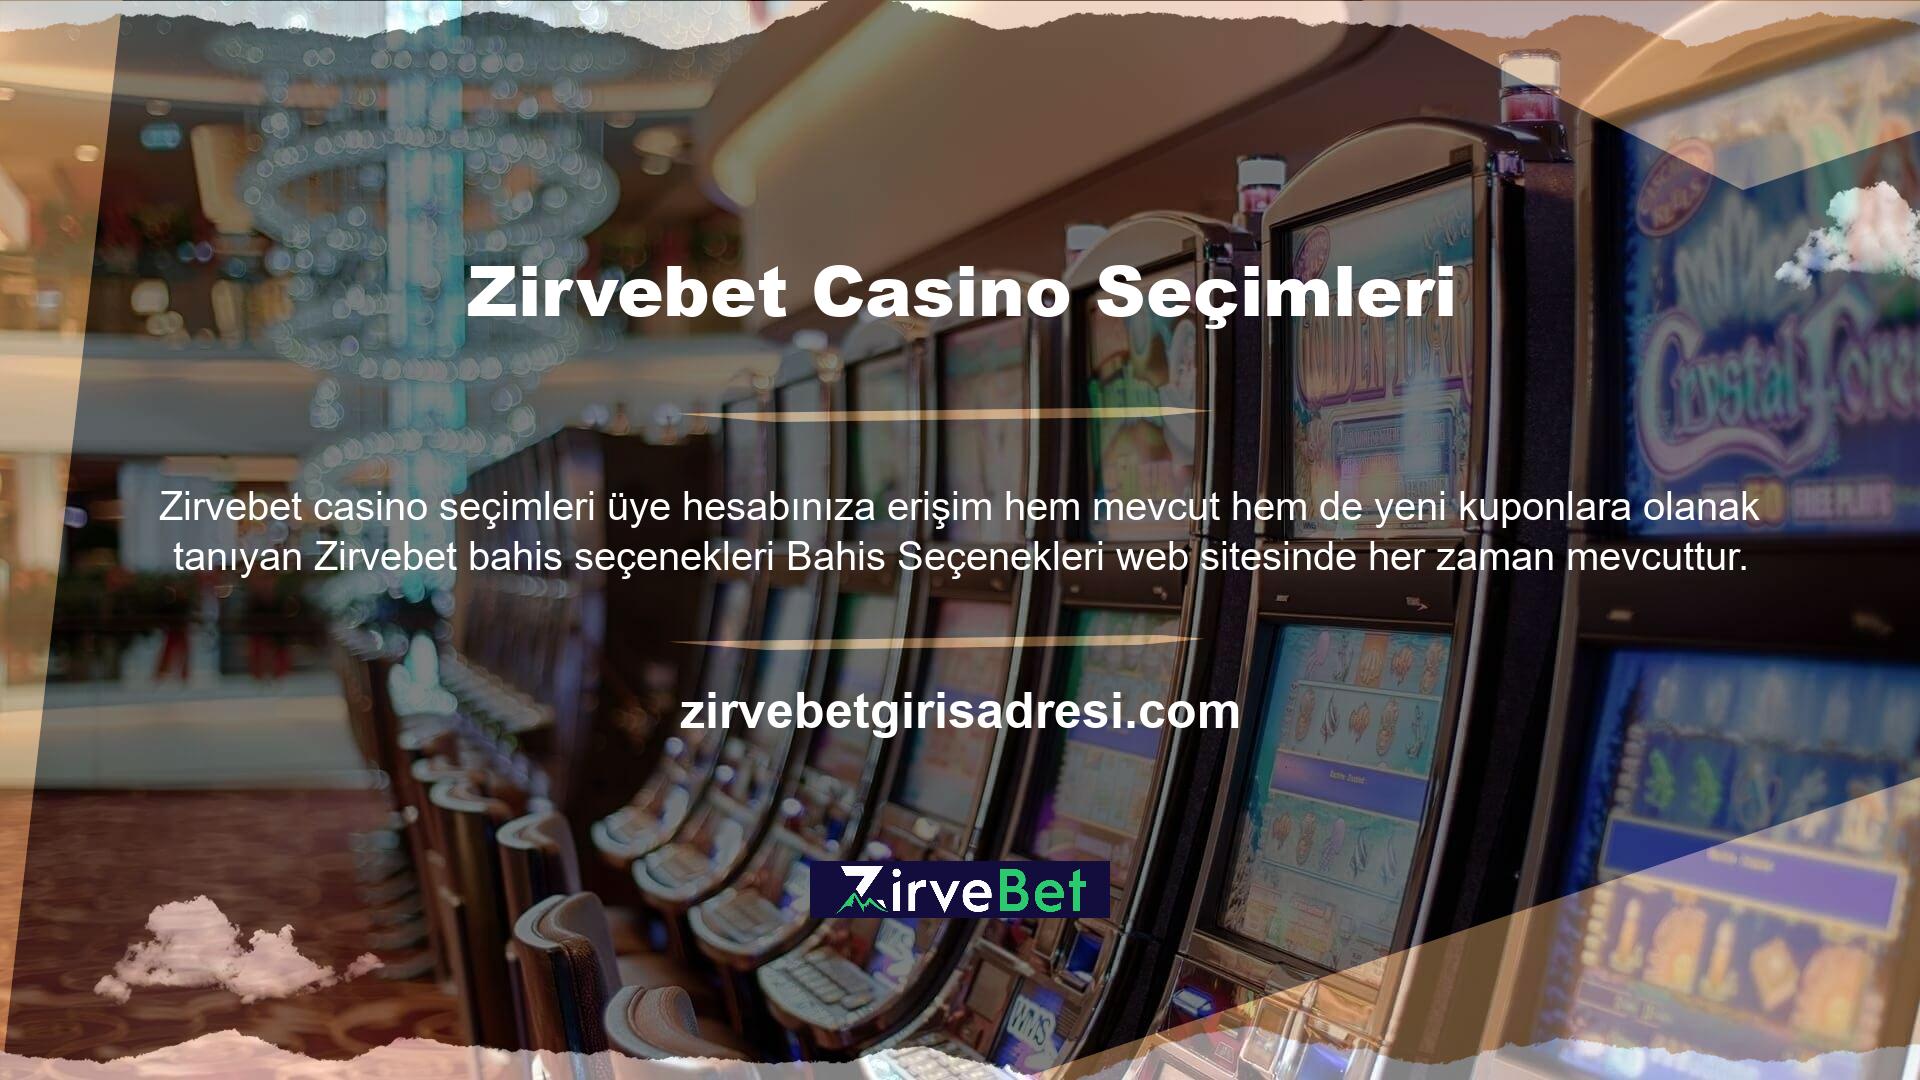 Mobil casino oyunları sunan en iyi siteler arasında Zirvebet